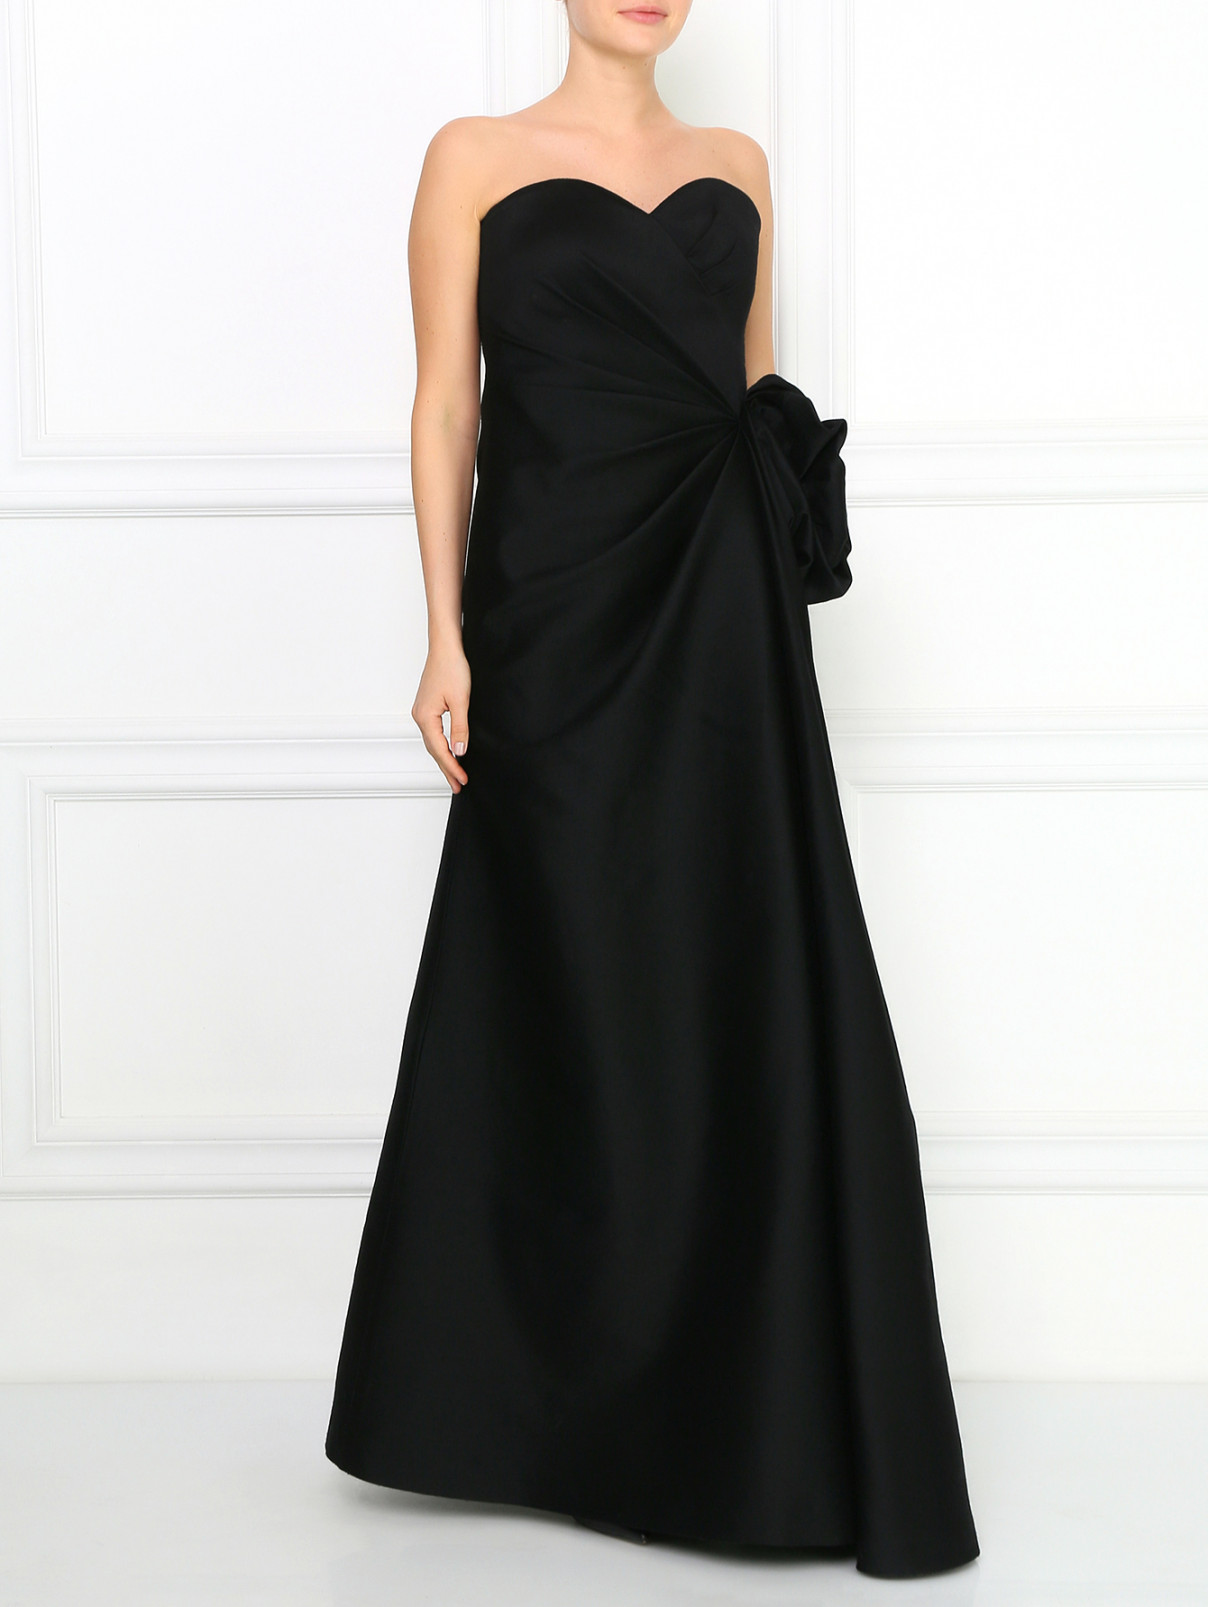 Платье-макси из шерсти и шелка с драпировкой Armani Collezioni  –  Модель Общий вид  – Цвет:  Черный